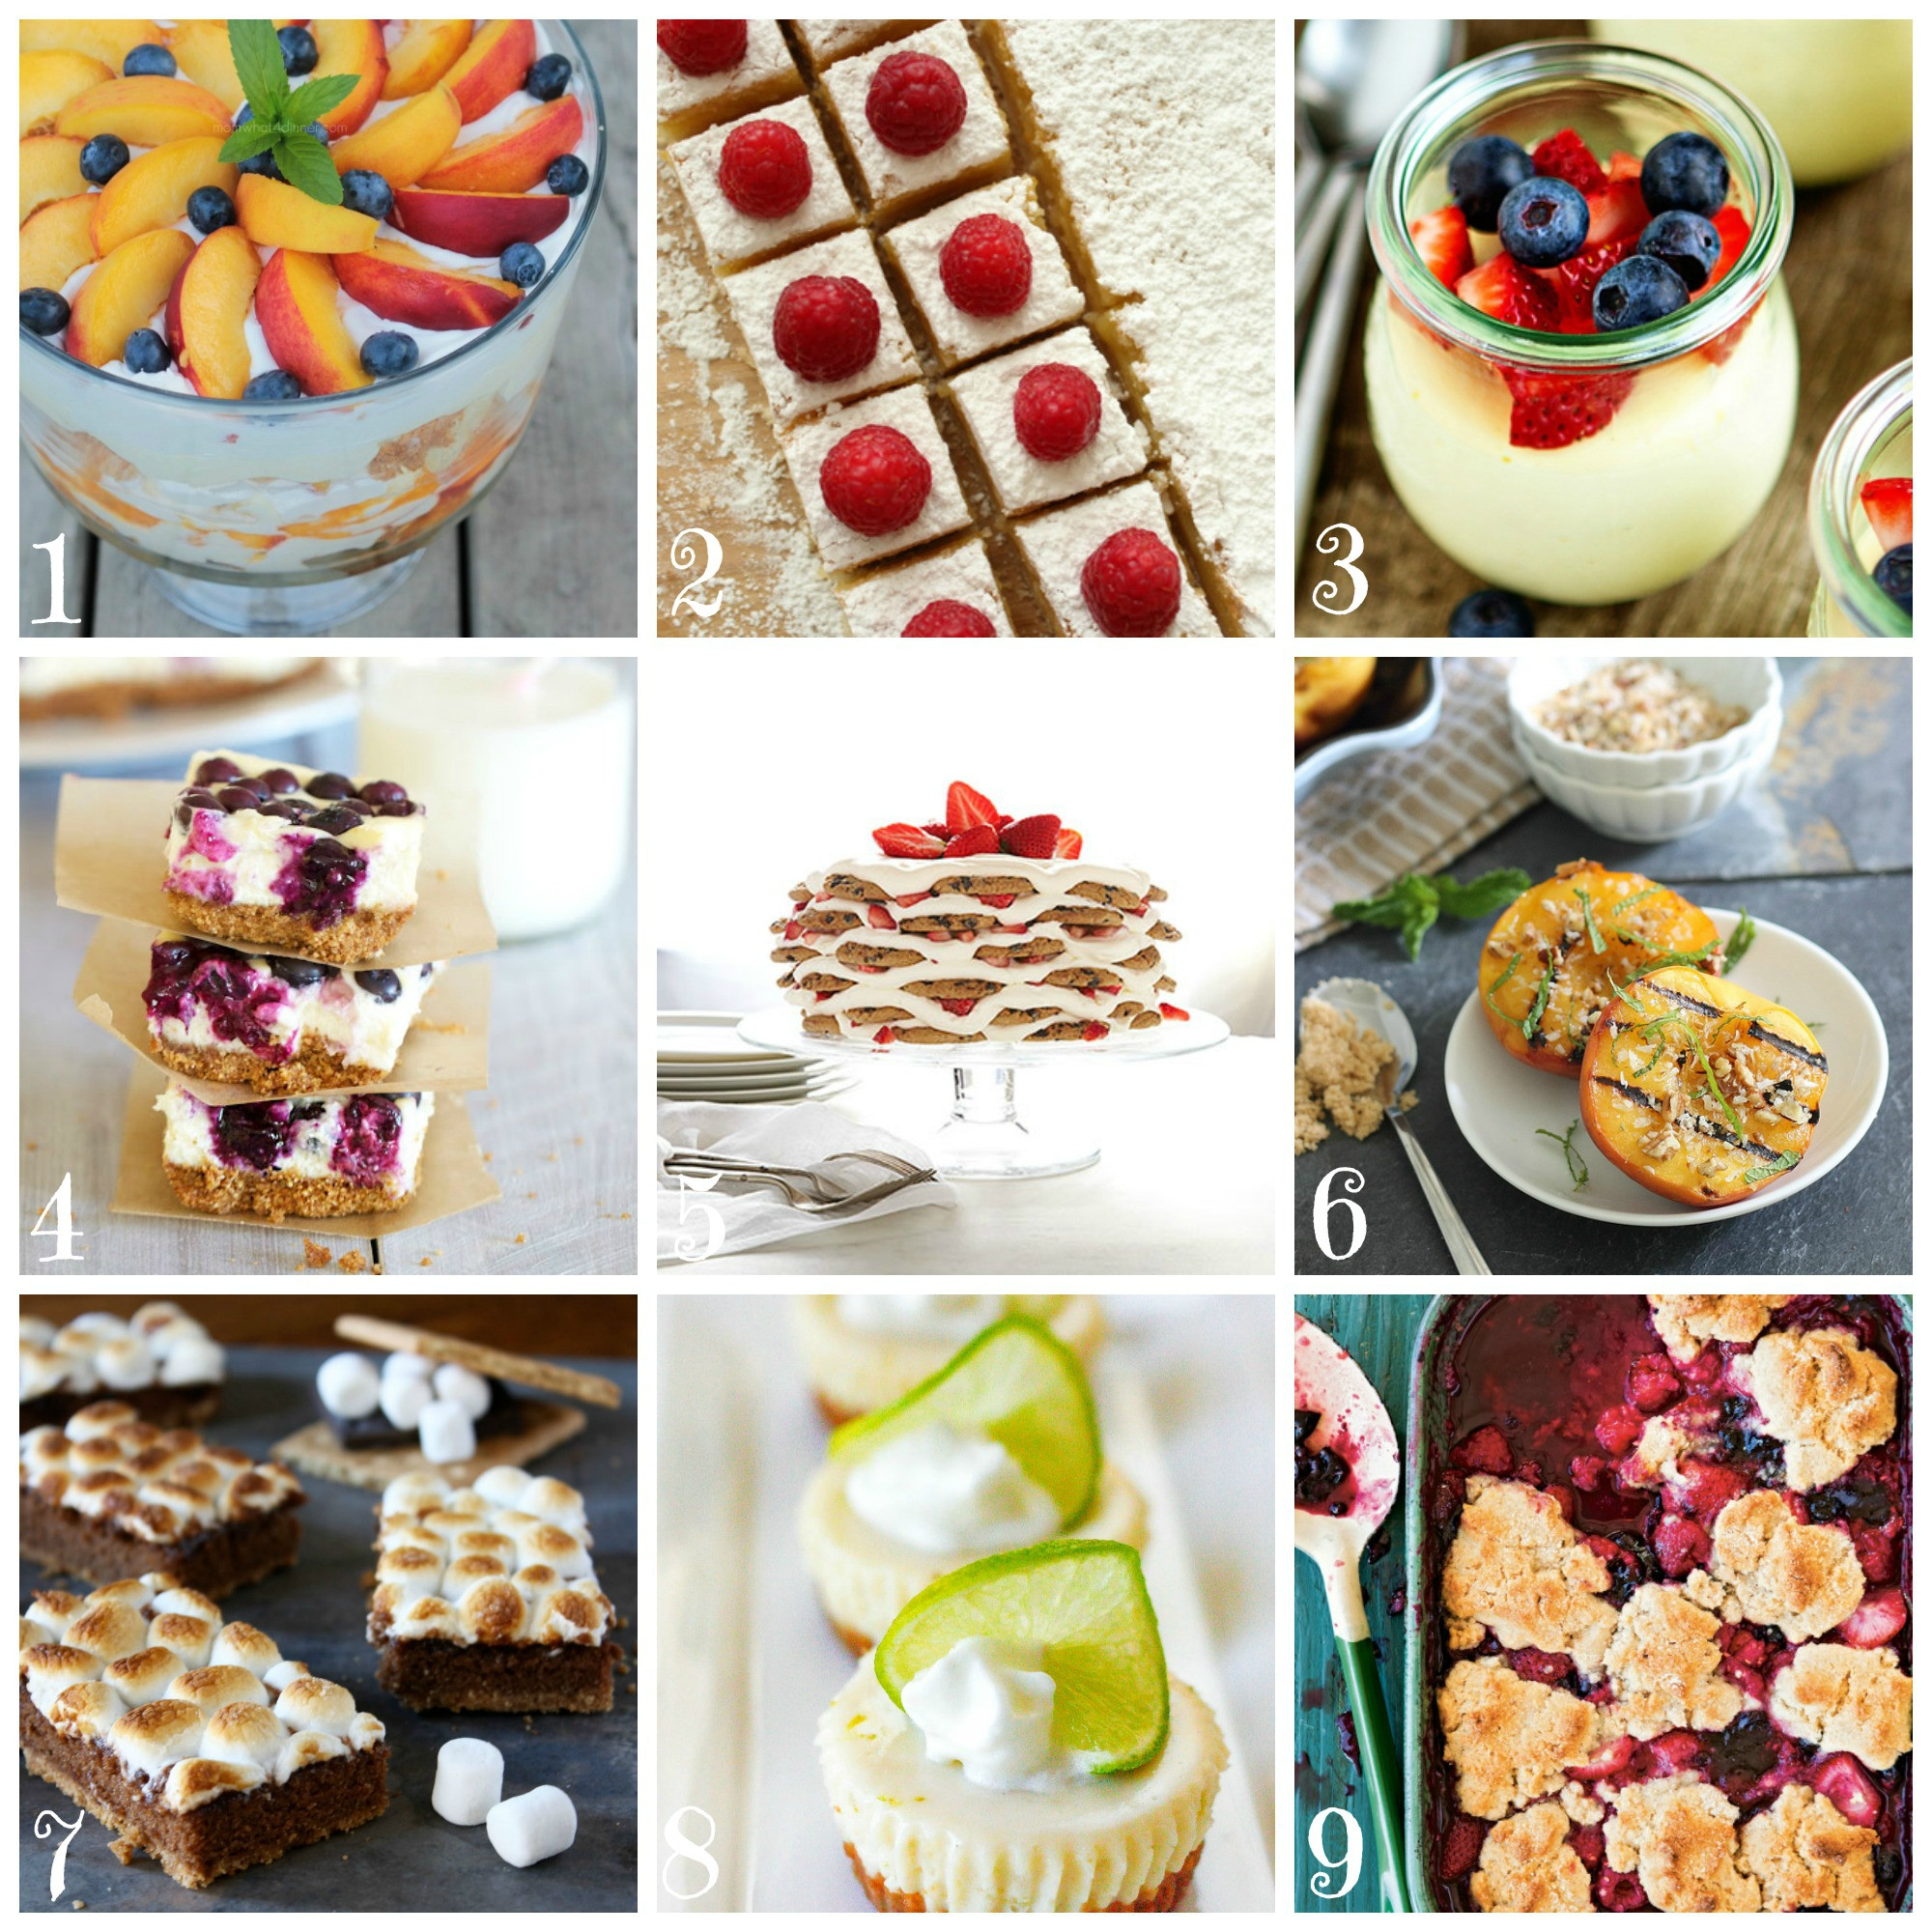 Summer Dessert Ideas
 Best Summer Dessert Recipes • CakeJournal